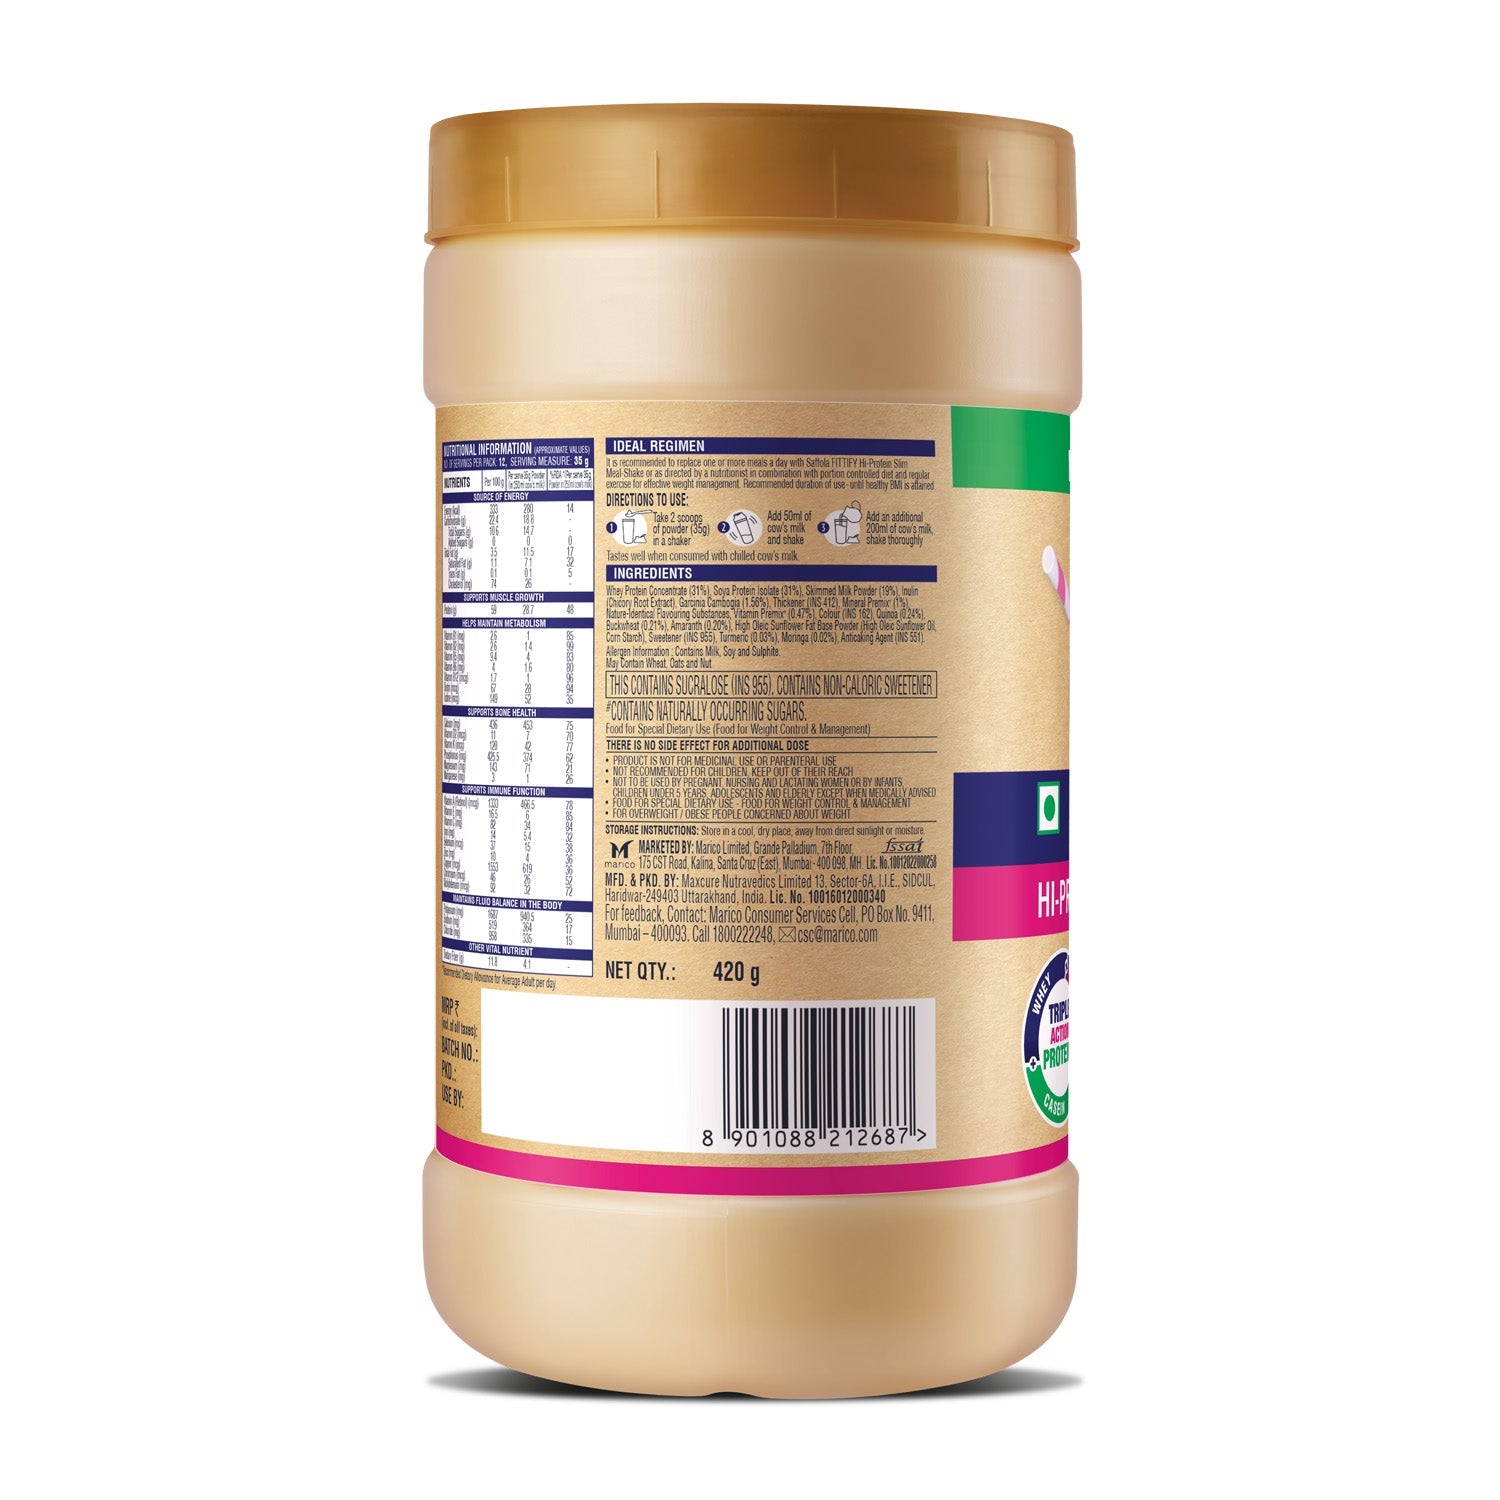 [CRED] Saffola Fittify Hi-Protein Slim Meal Shake- Rose - BOGO - 840 gms